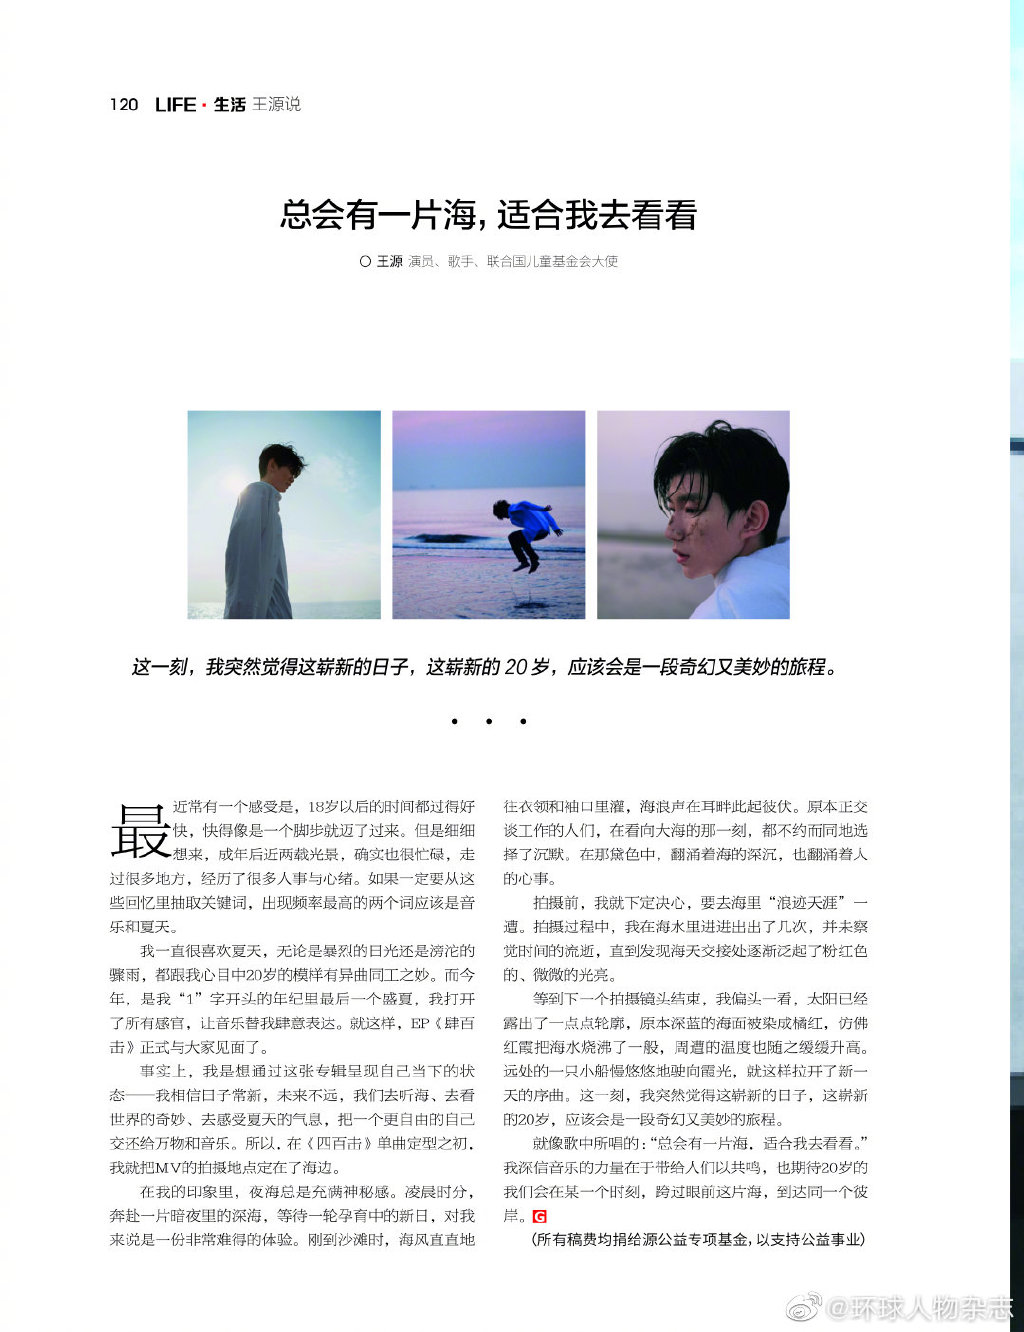 王源新闻200819新一期环球人物杂志王源说总会有一片海适合我去看看